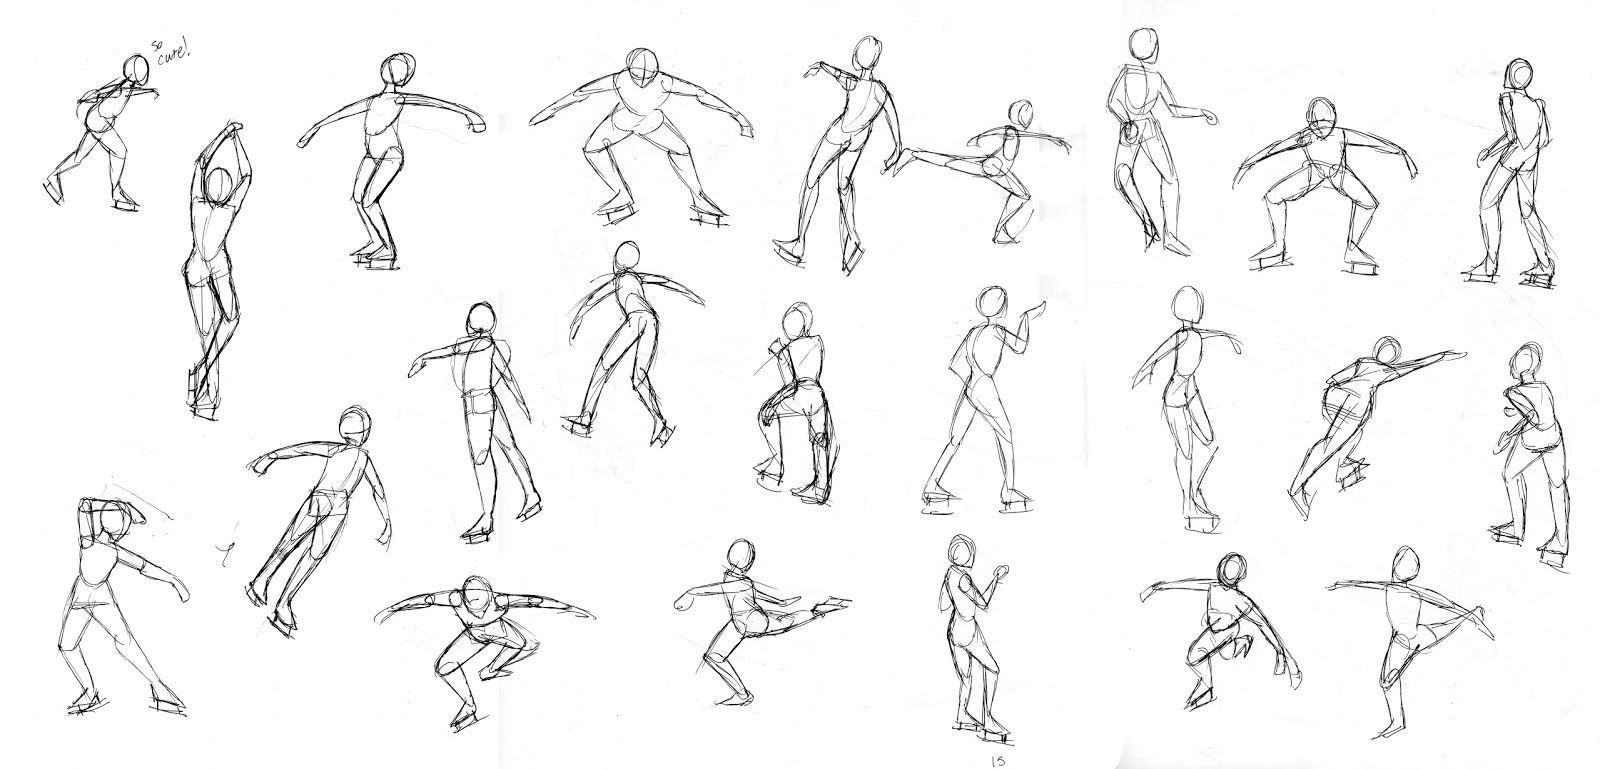 Изобразить человека в движении. Фигура человека в движении. Рисование человека в движении. Рисование фигуры человека в движении. Человек в движении рисунок карандашом.